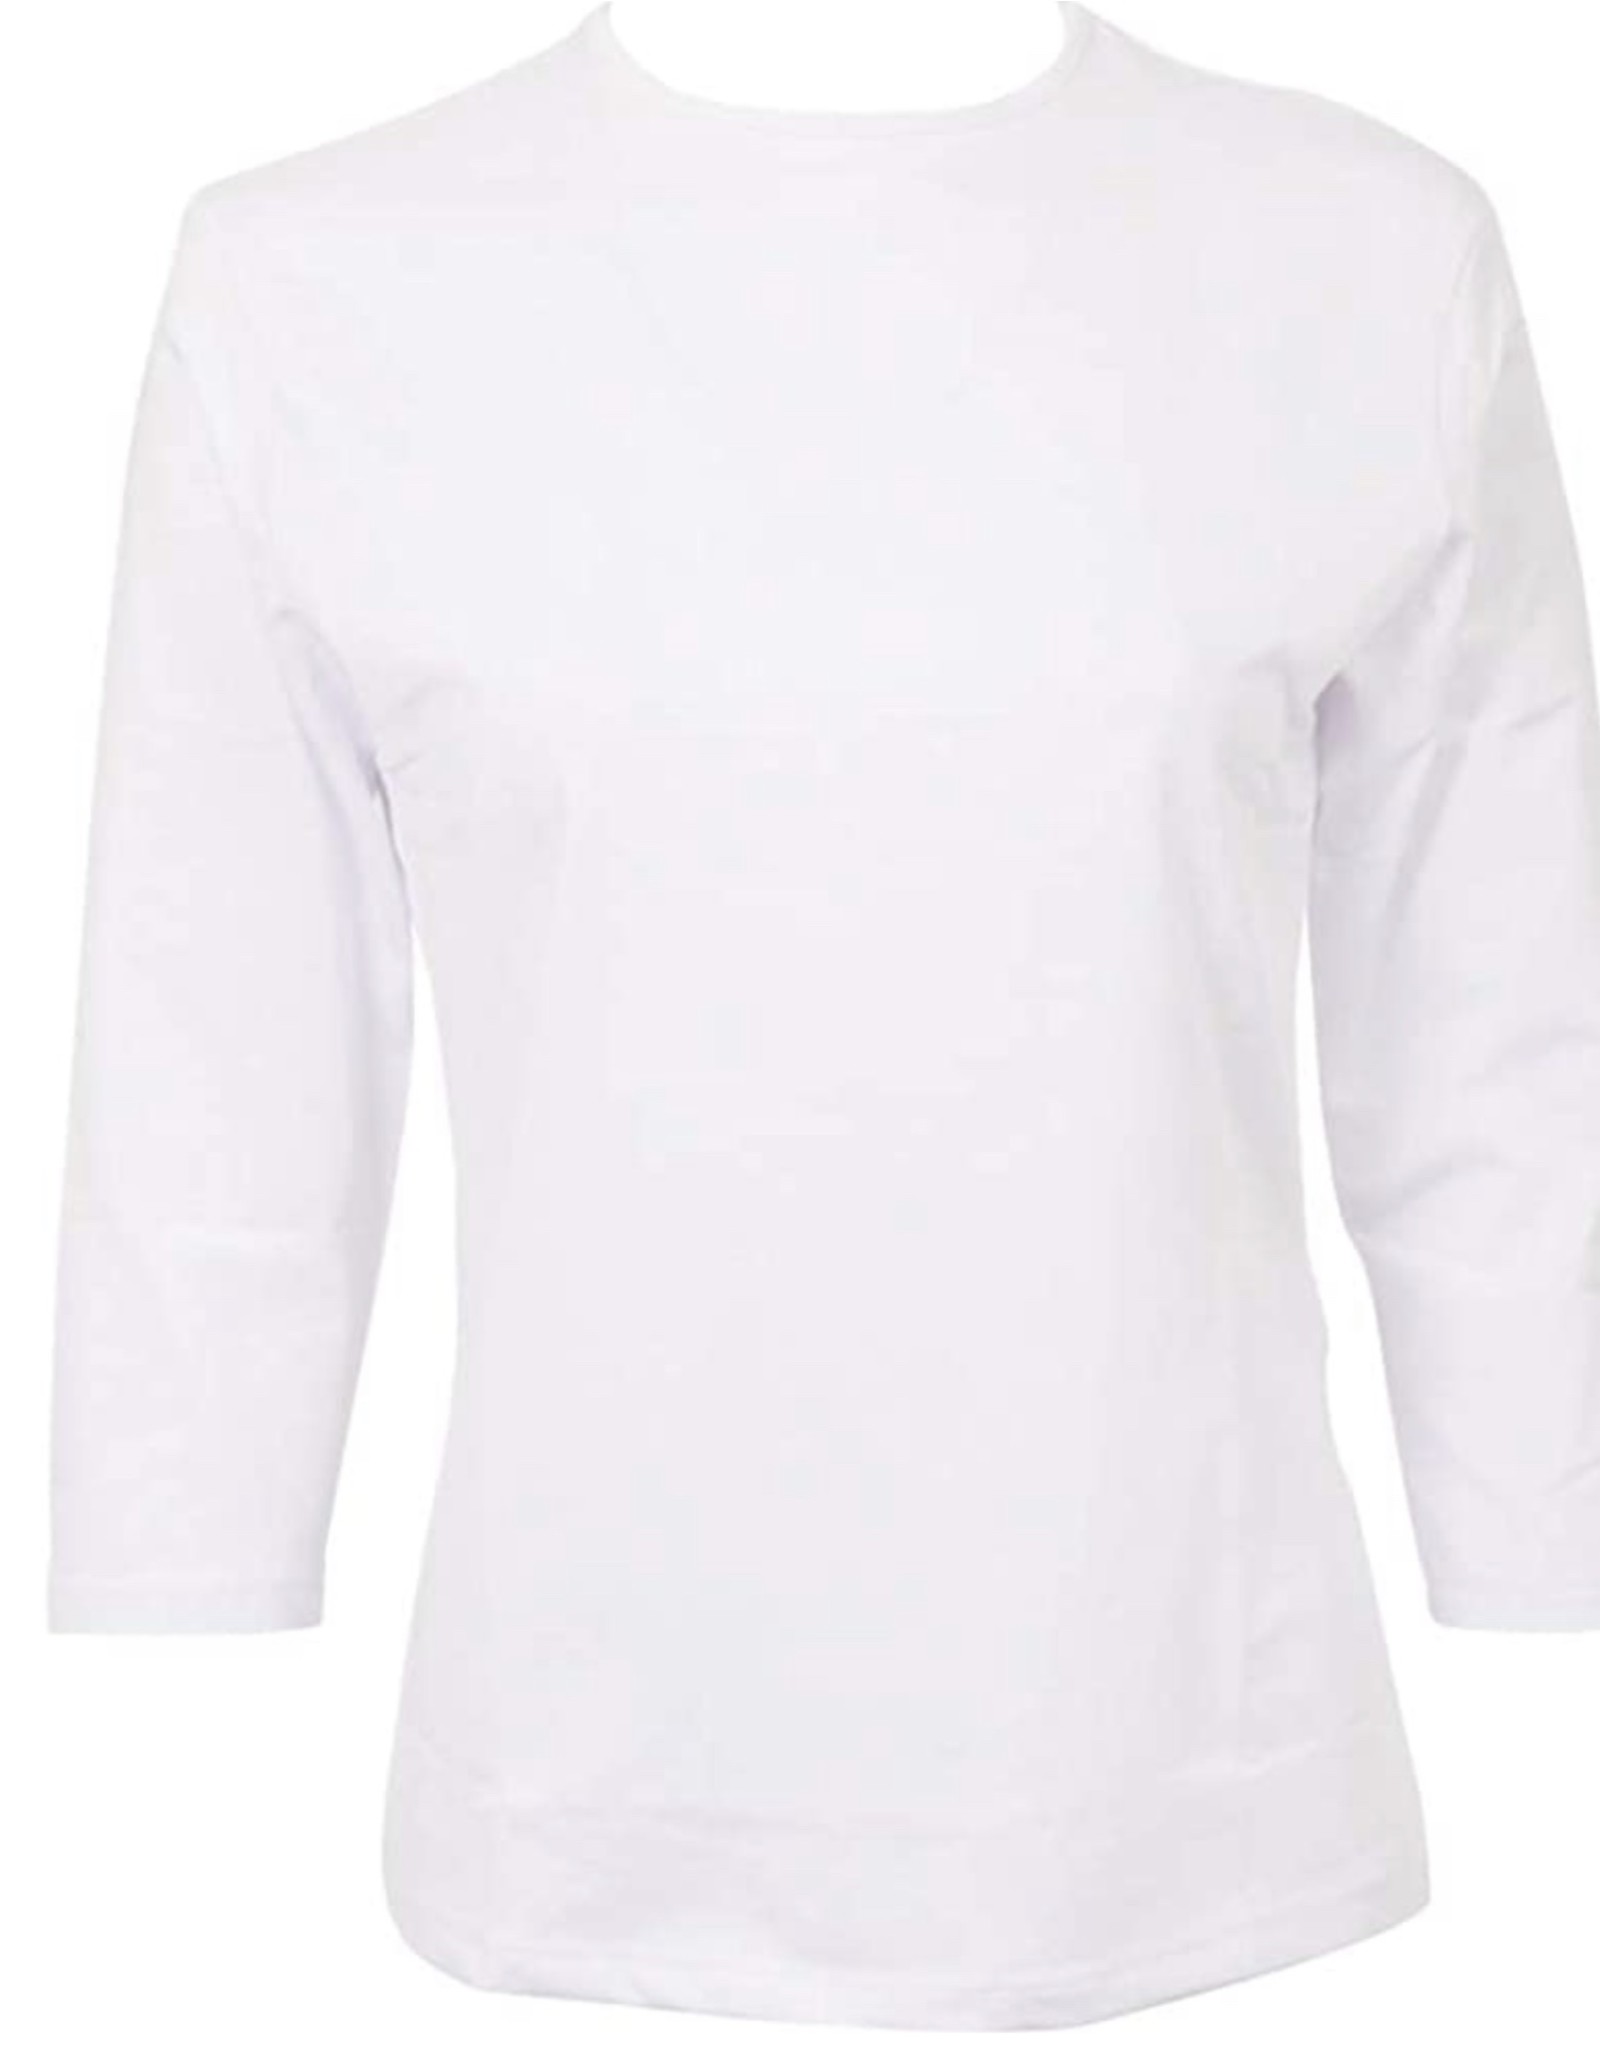 Kiki Riki Kiki Riki Women's 3/4 Length Sleeve Lycra Shell 17324